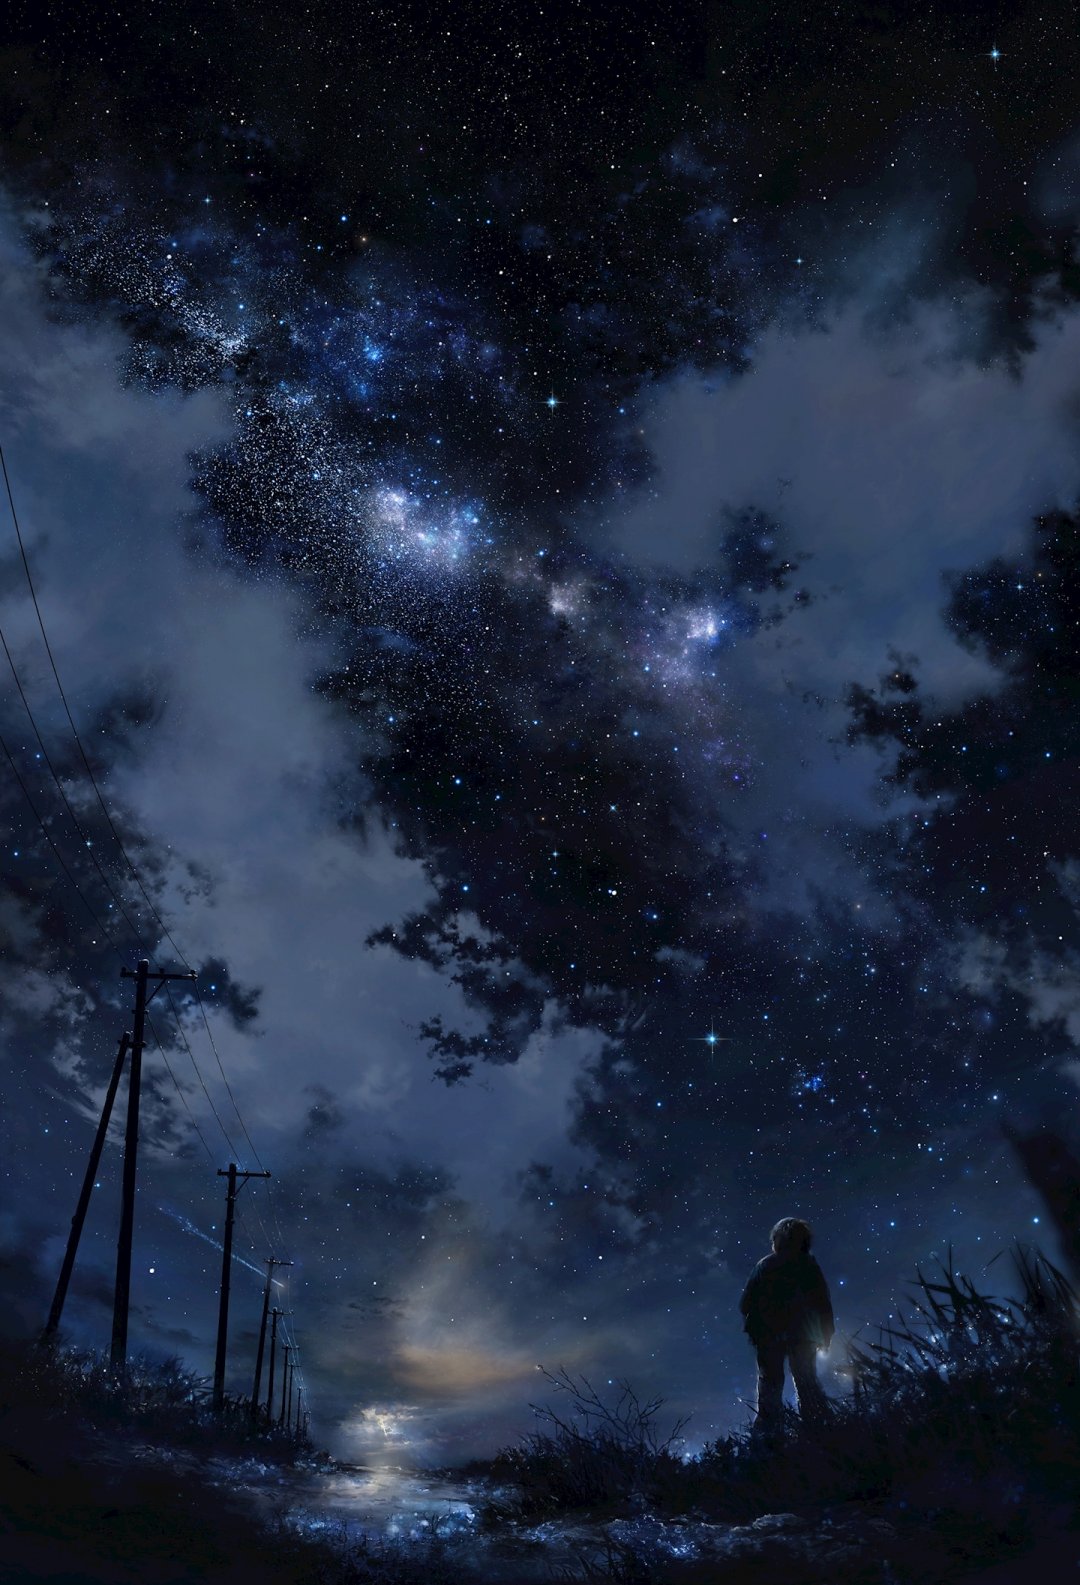 夜空孤独男孩动漫风景 高清图片 手机壁纸